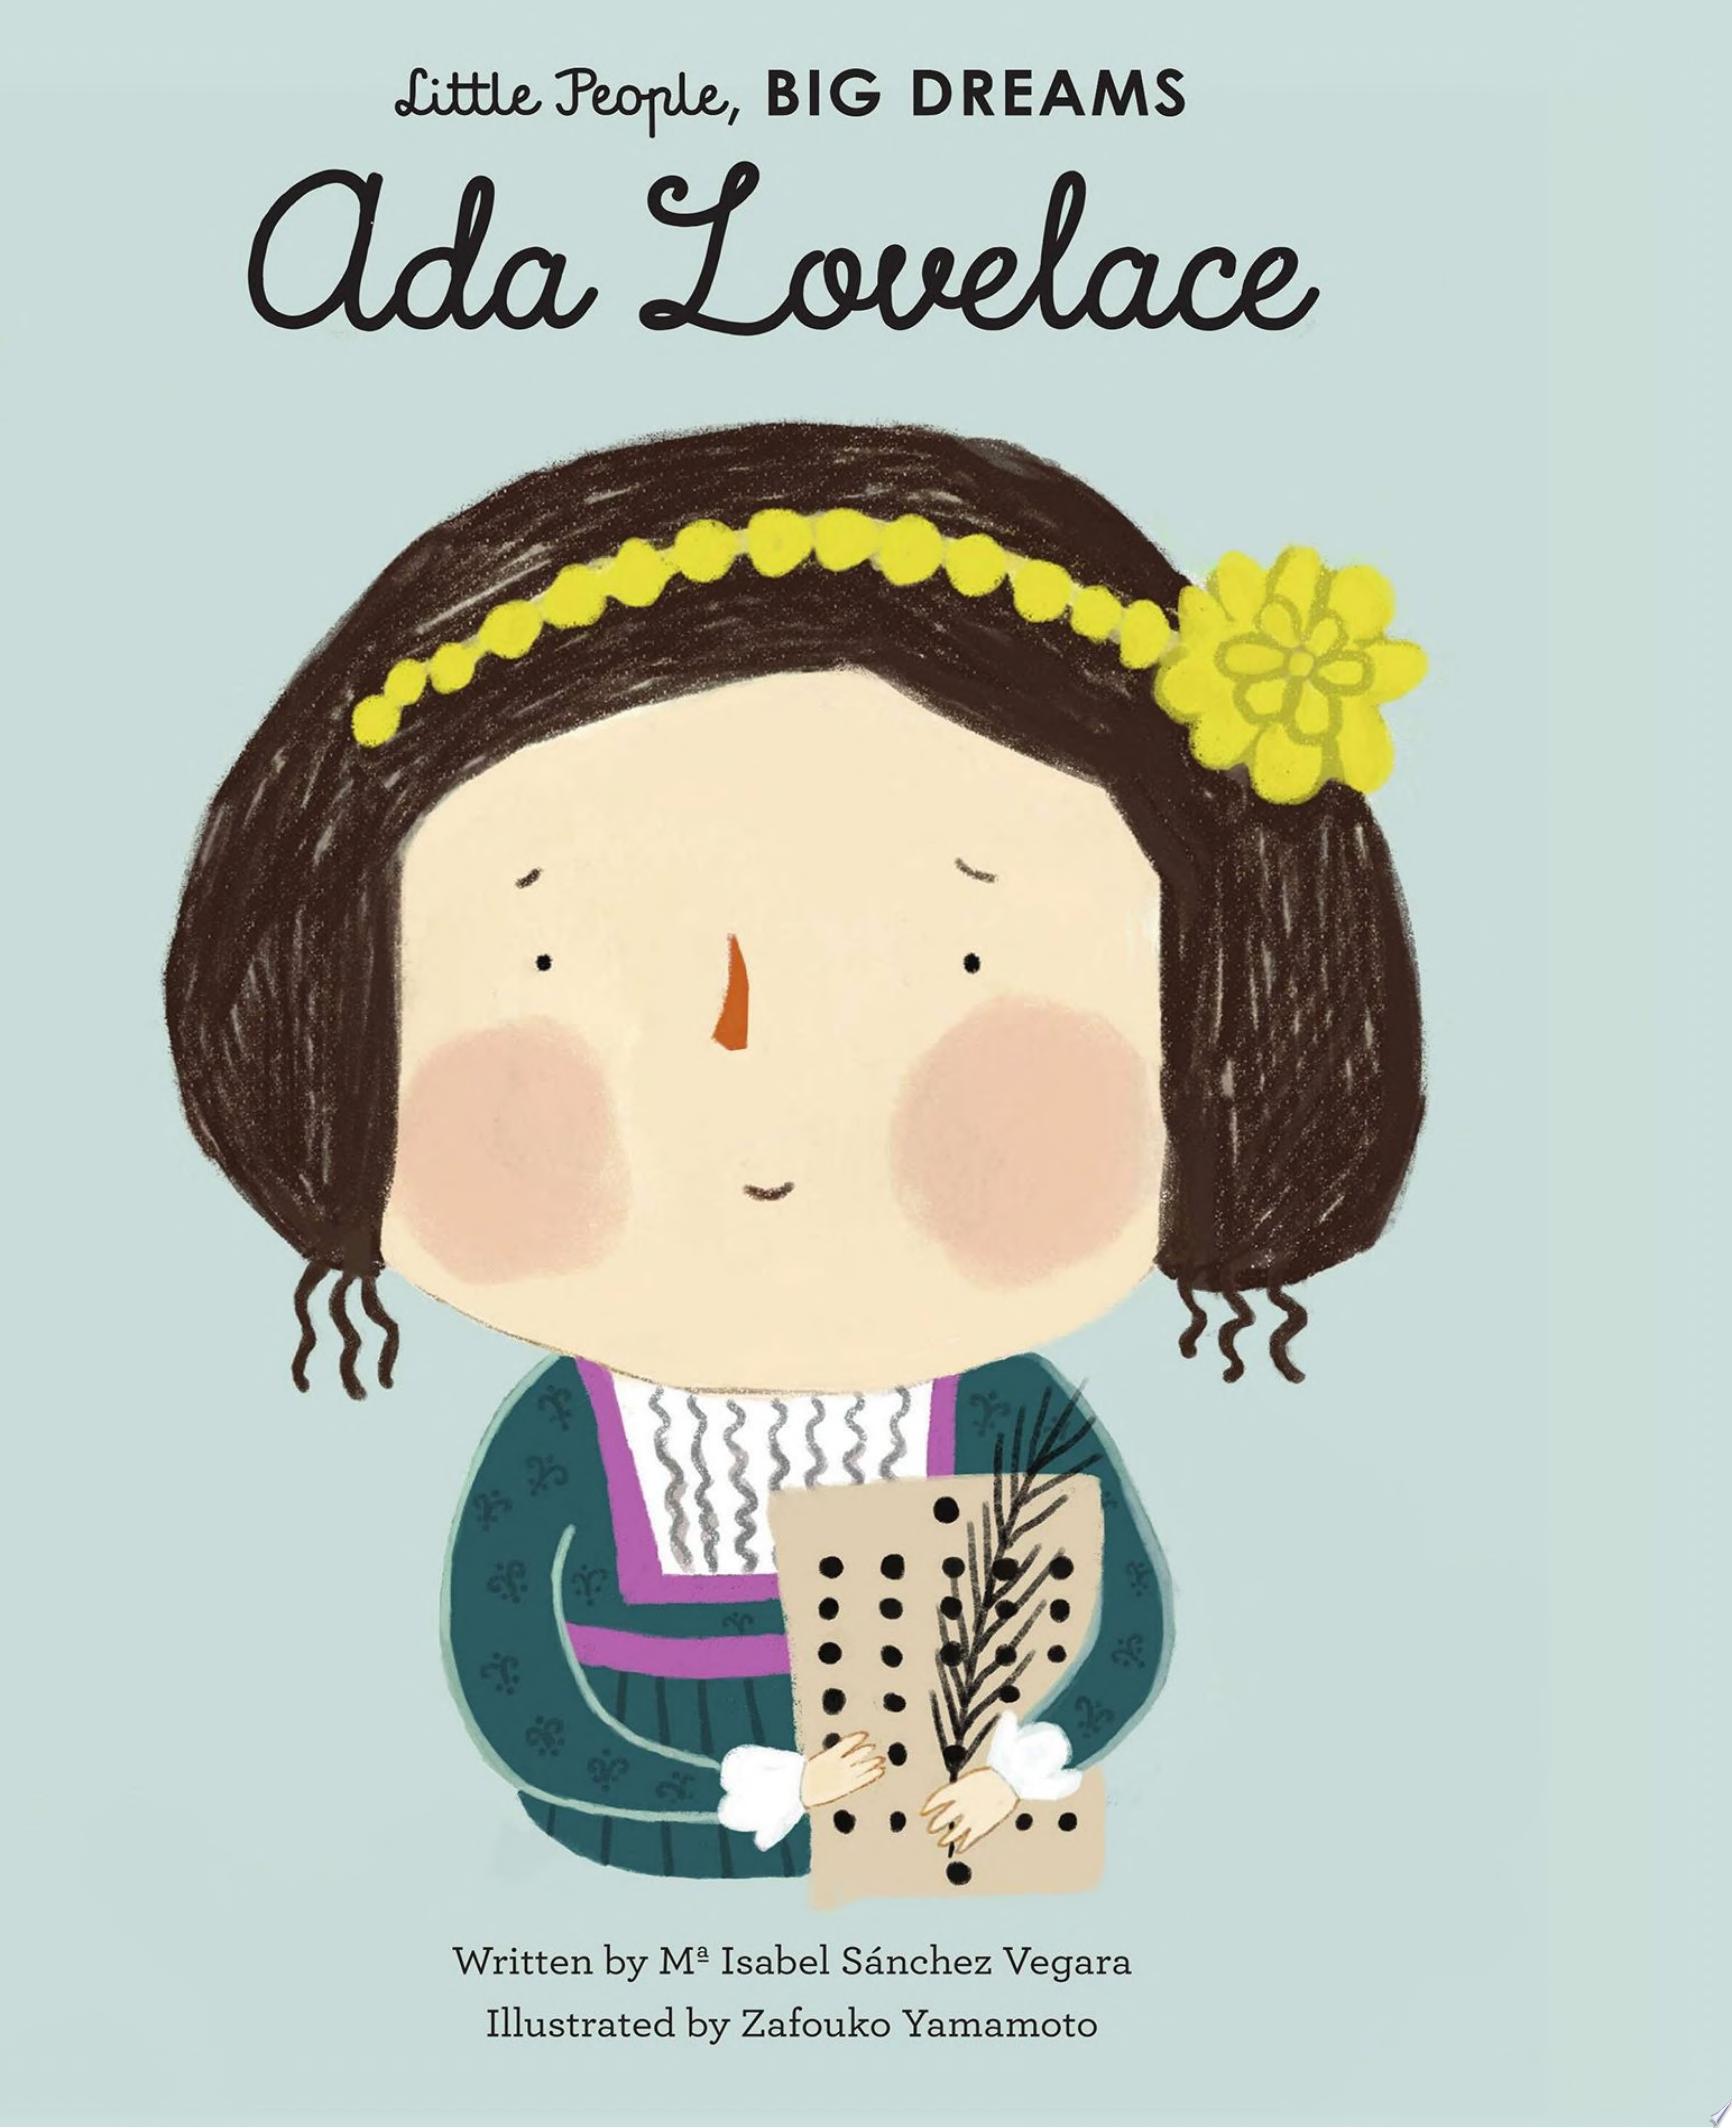 Image for "Ada Lovelace"